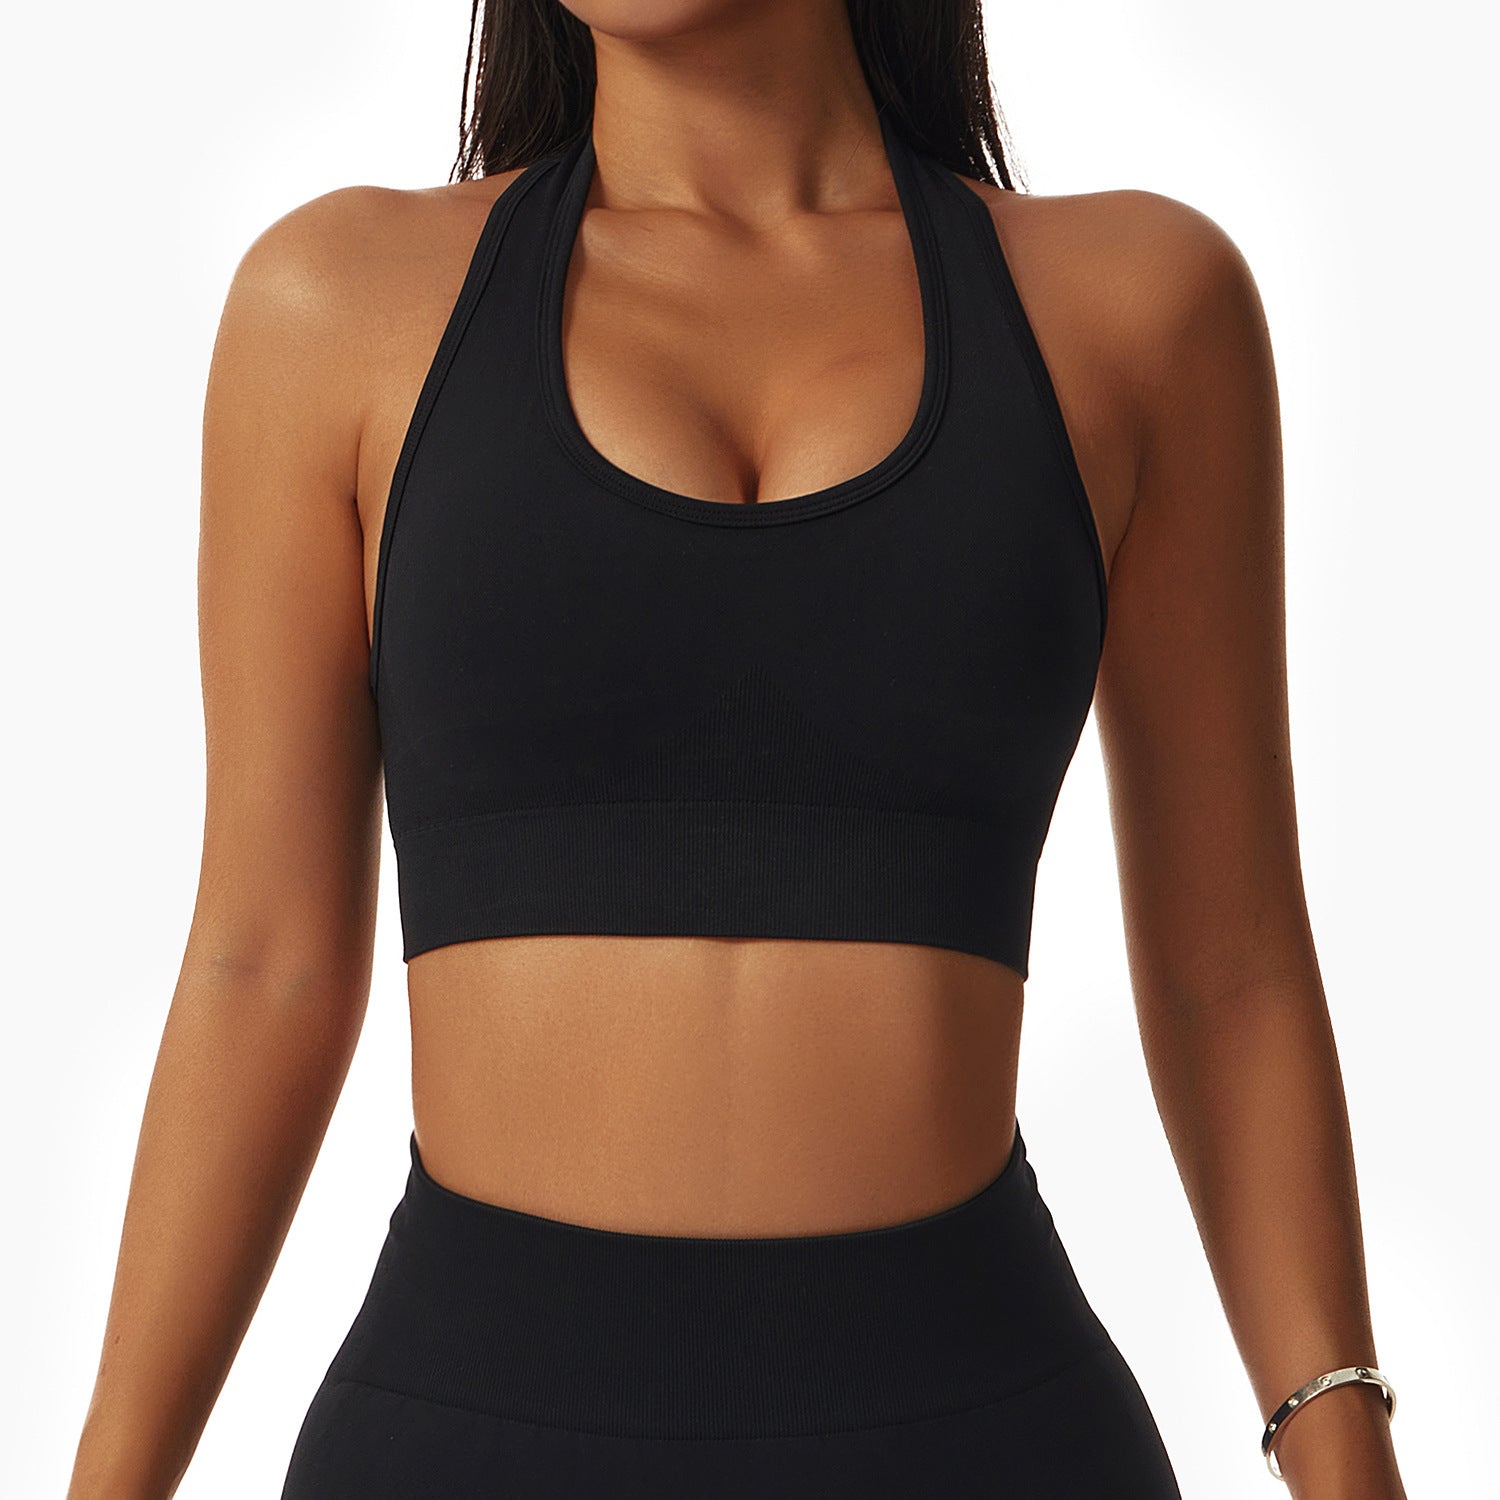 Seamless sexy workout bra